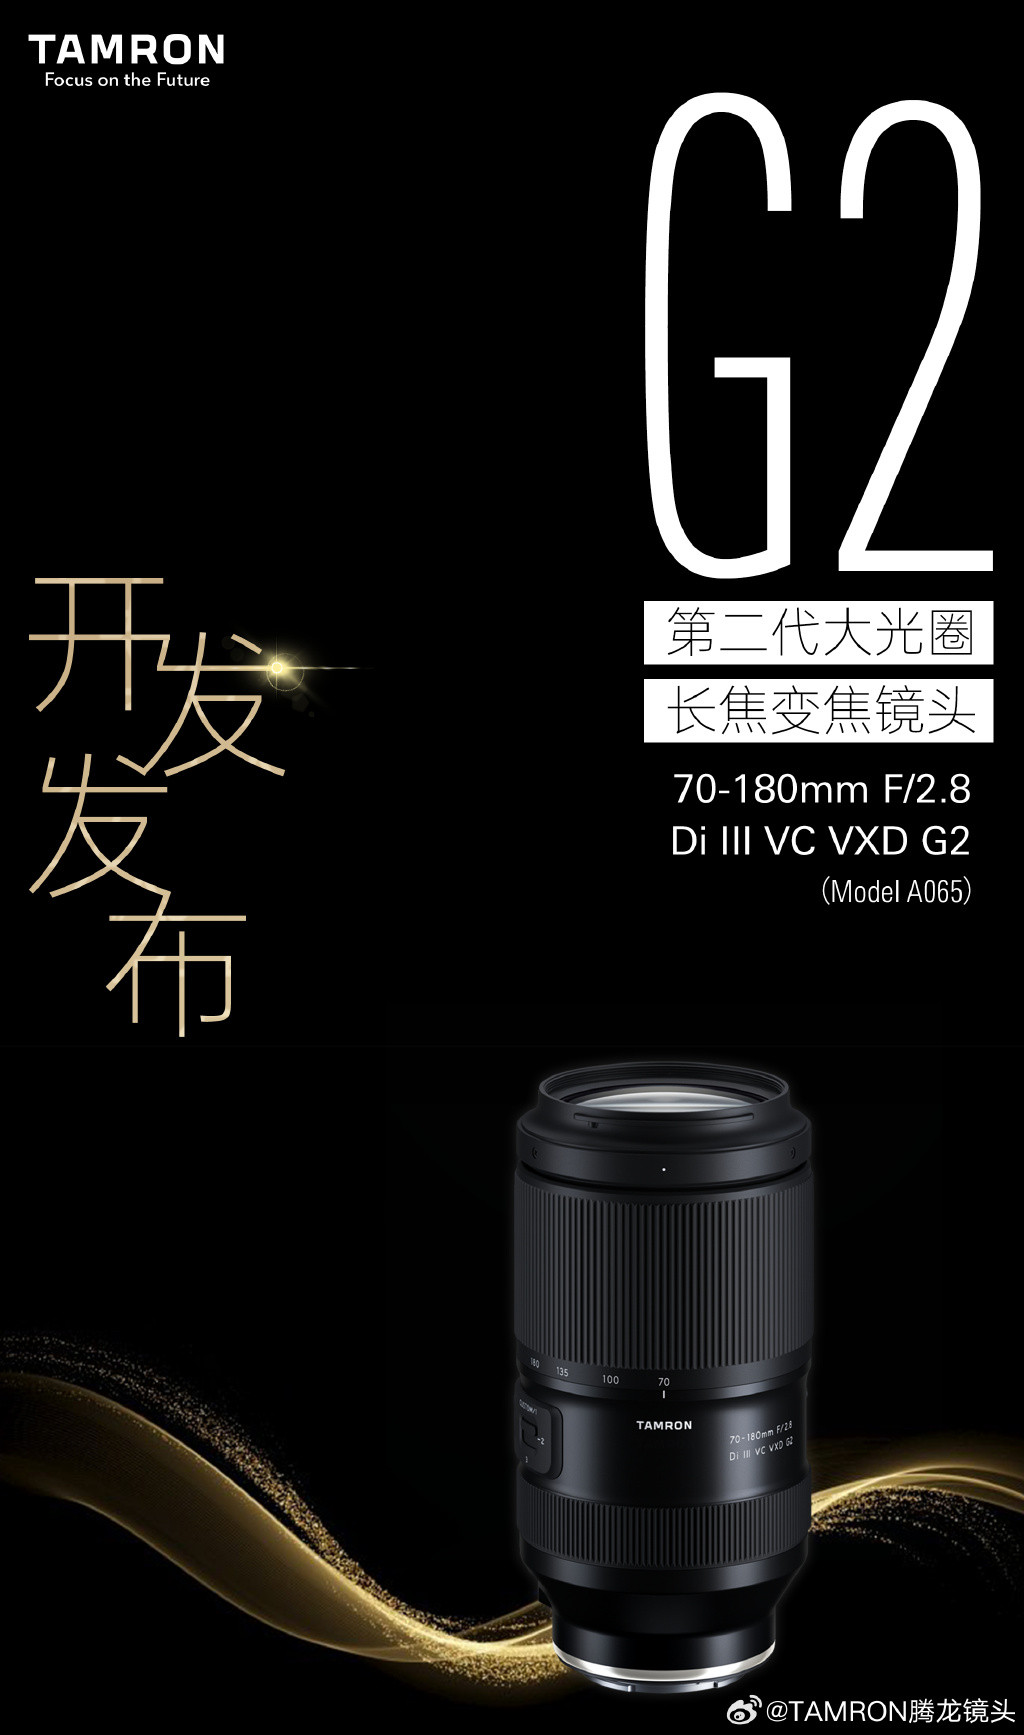 腾龙宣布研发70-180mm F2.8 Di III VC VXD G2镜头_无反镜头_什么值得买